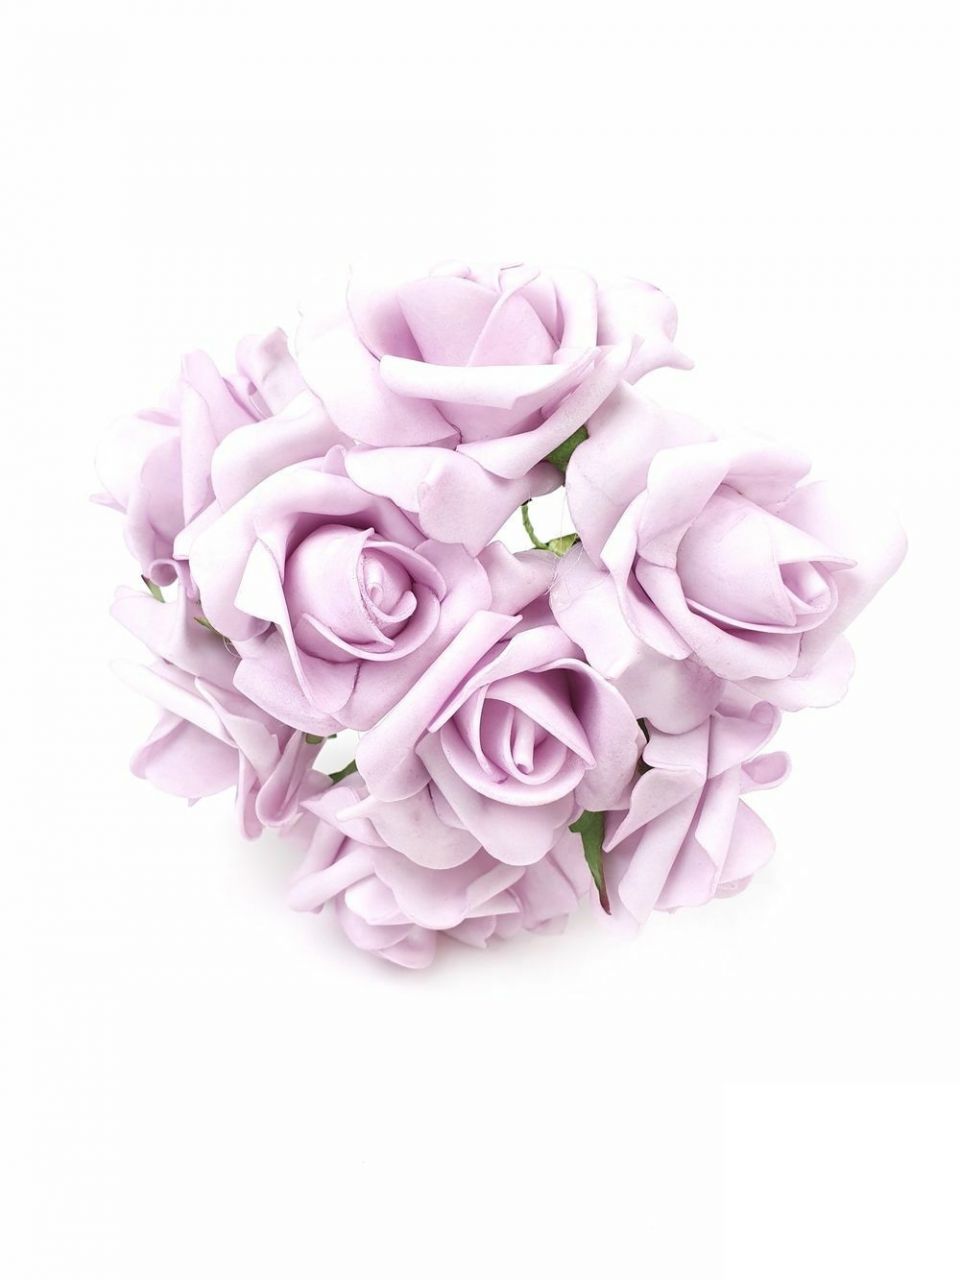 Drótos polyfoam rózsa - Több színben